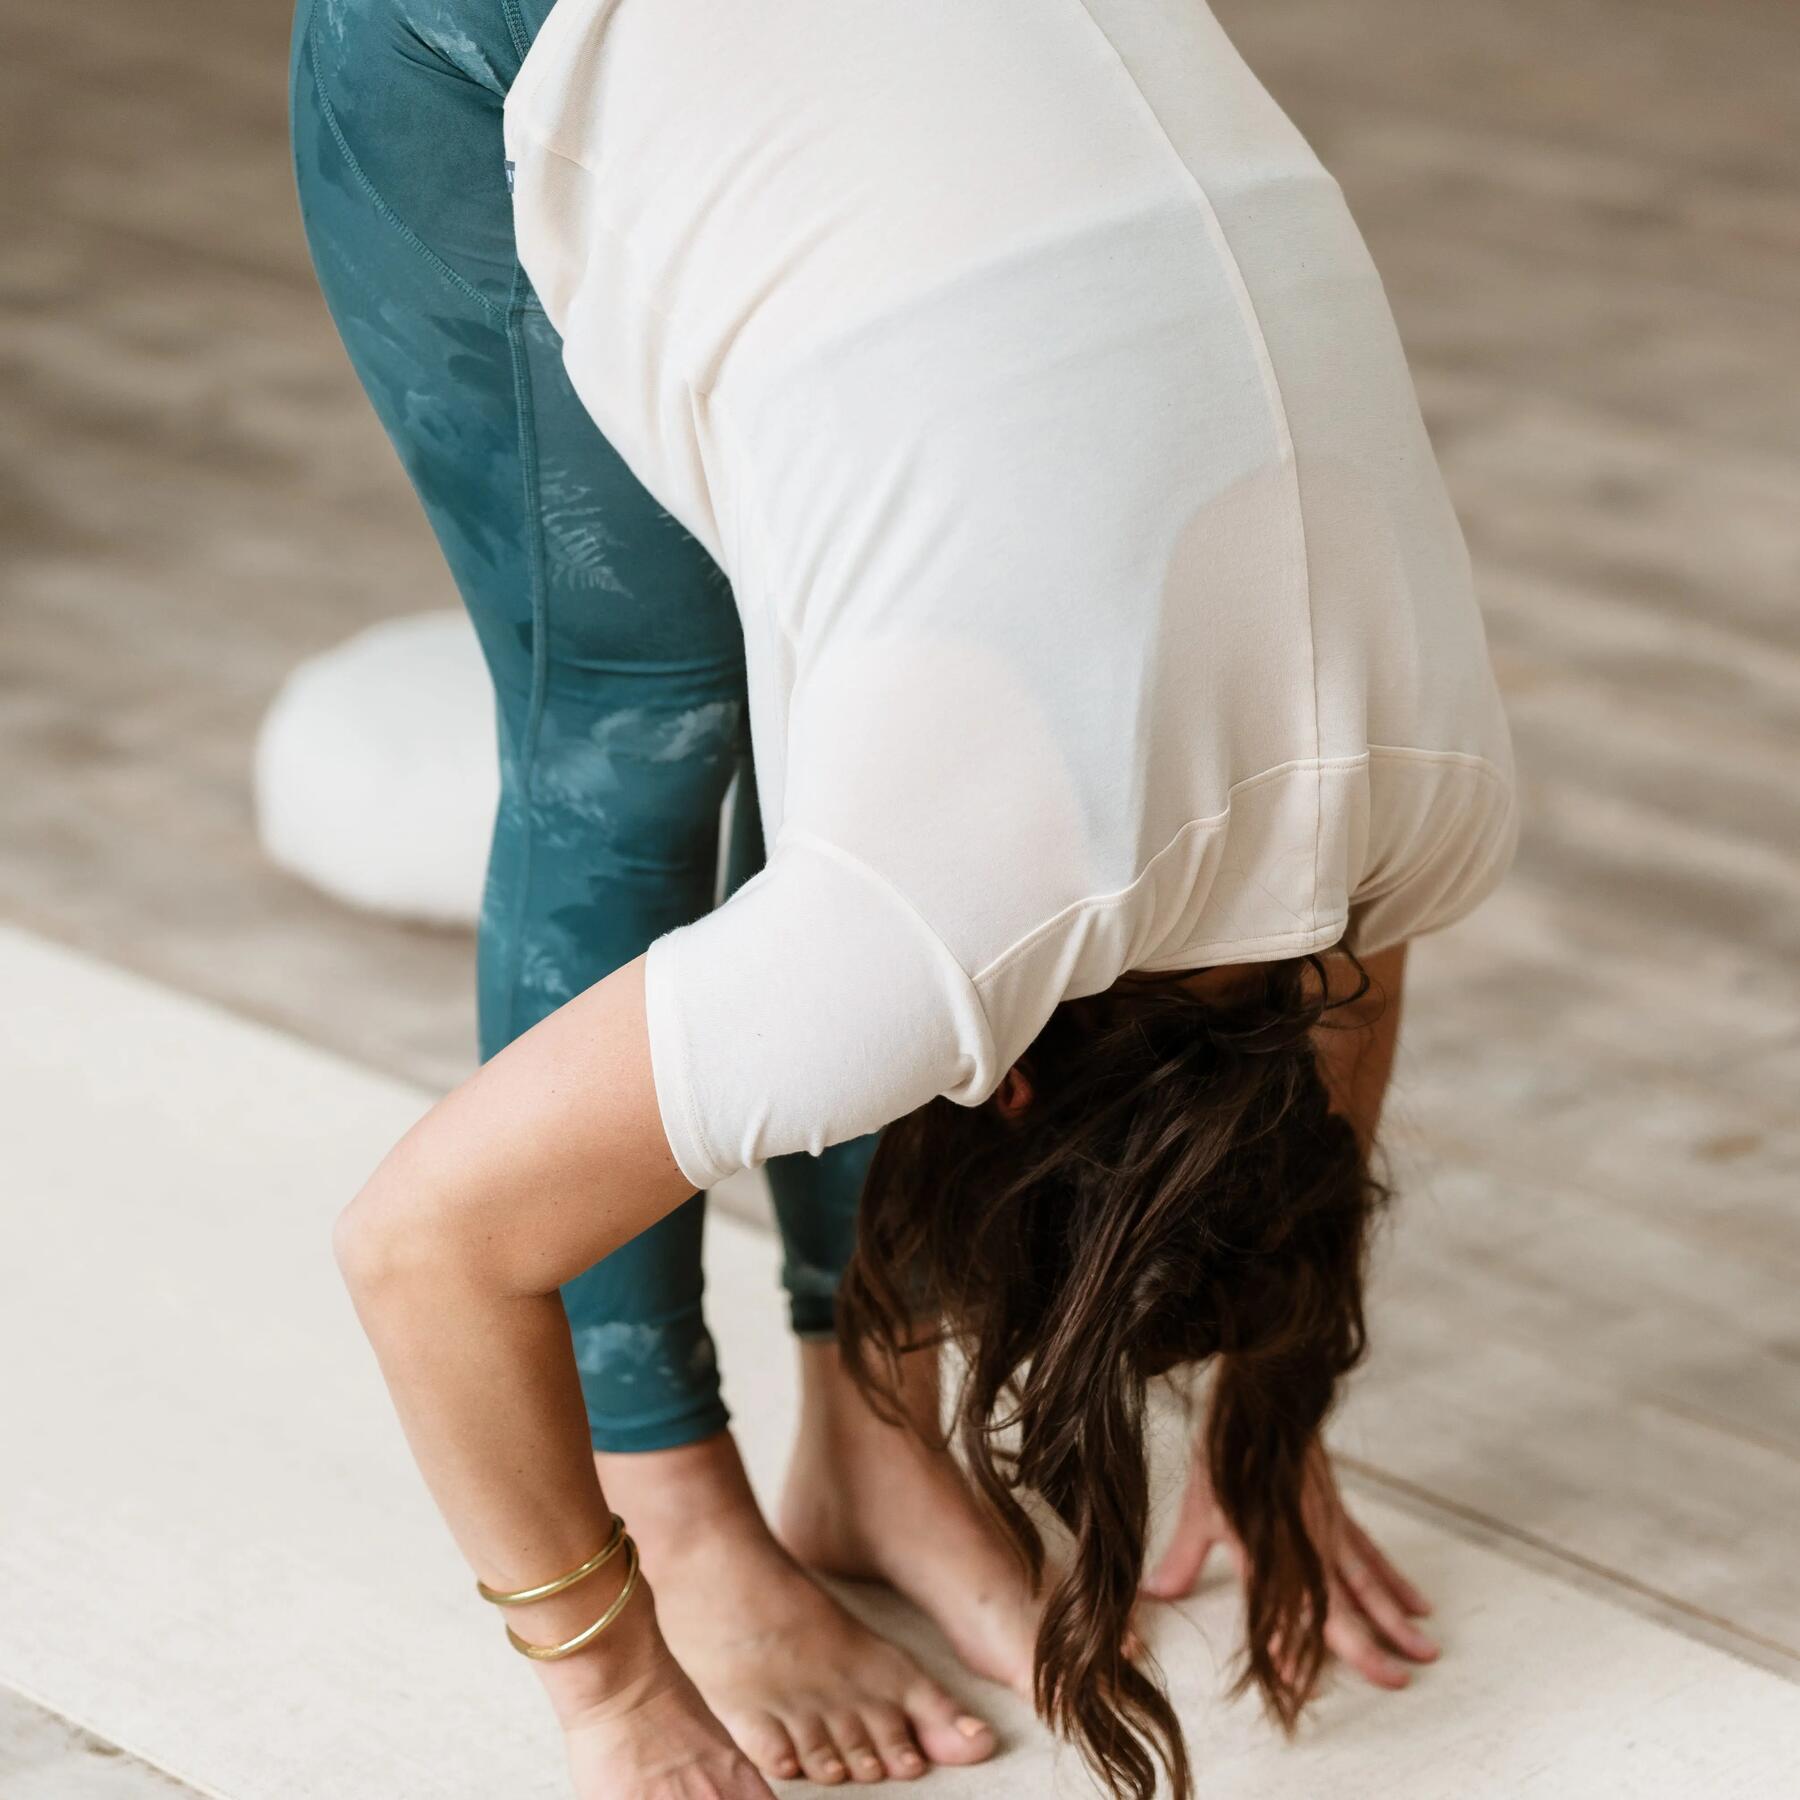 Yoga pour tous ! 5 Conseils pour protéger ses genoux en Yoga